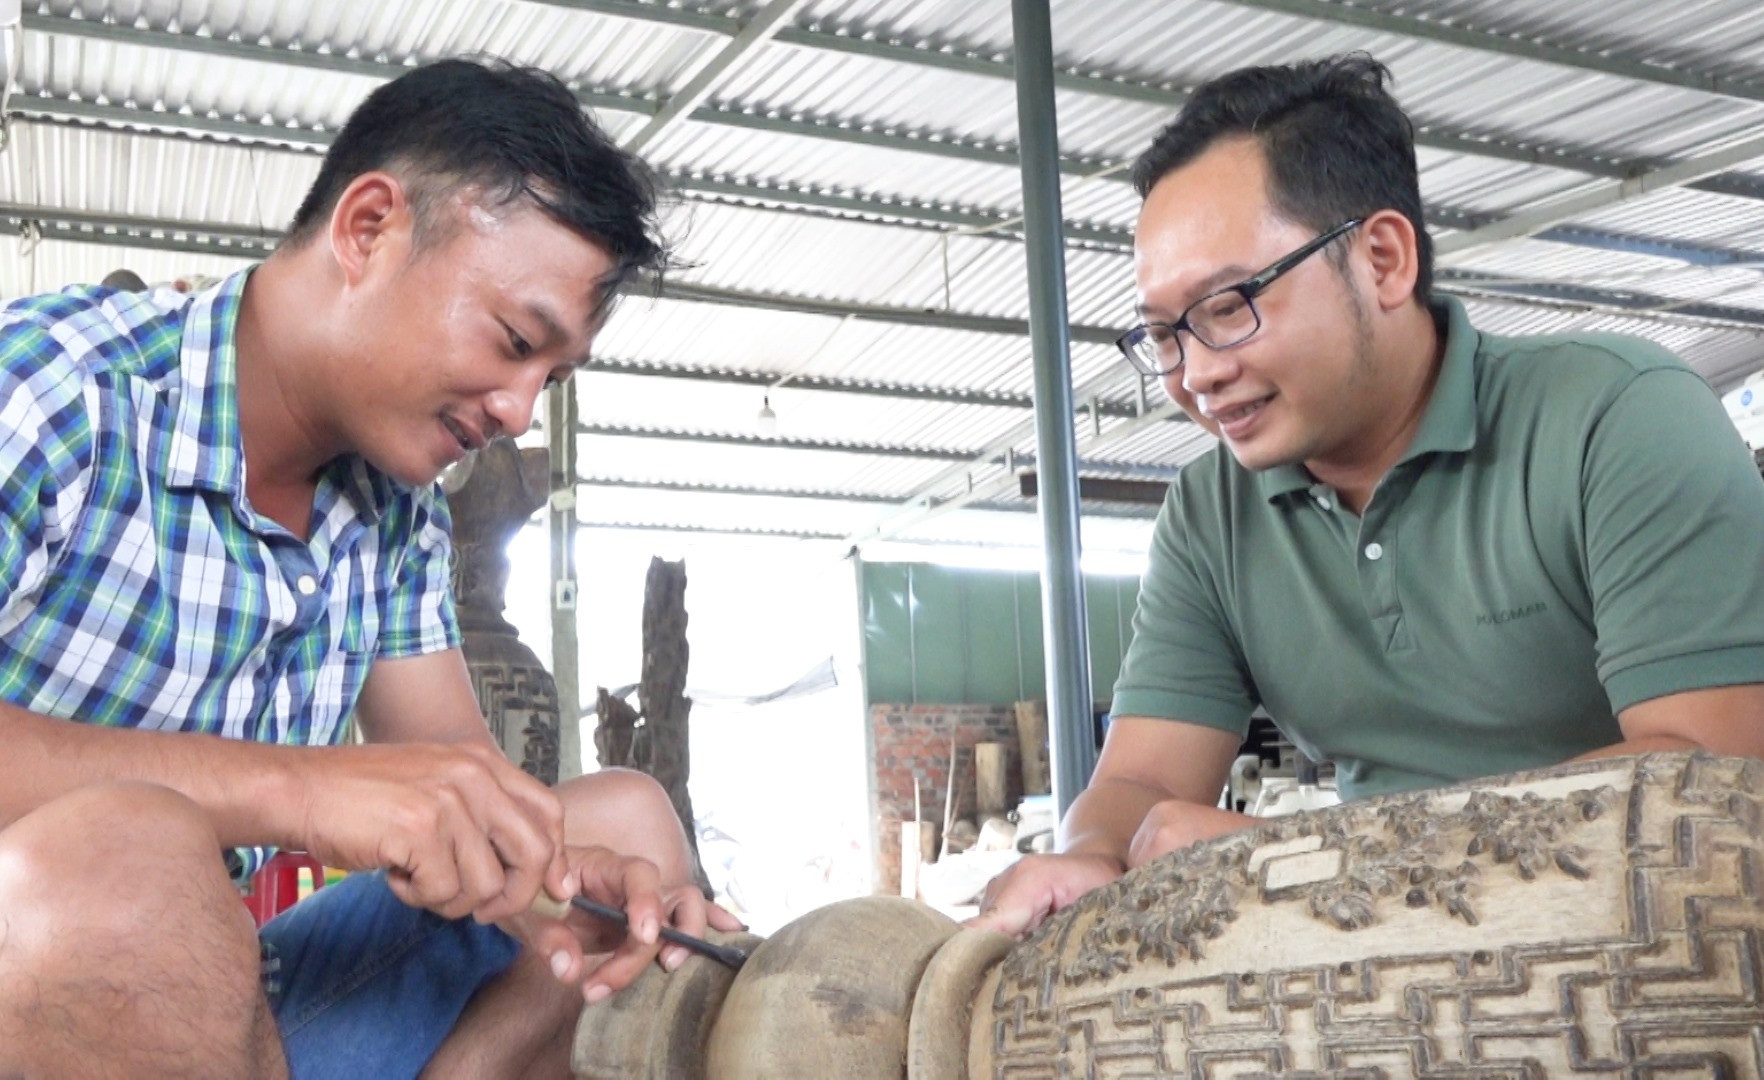 Ông Nguyễn Văn Trường (bên phải) cùng thợ đang chế tác sản phẩm trầm hương (ảnh chụp thời điểm dịch Covid-19 chưa bùng phát). Ảnh: H.Q